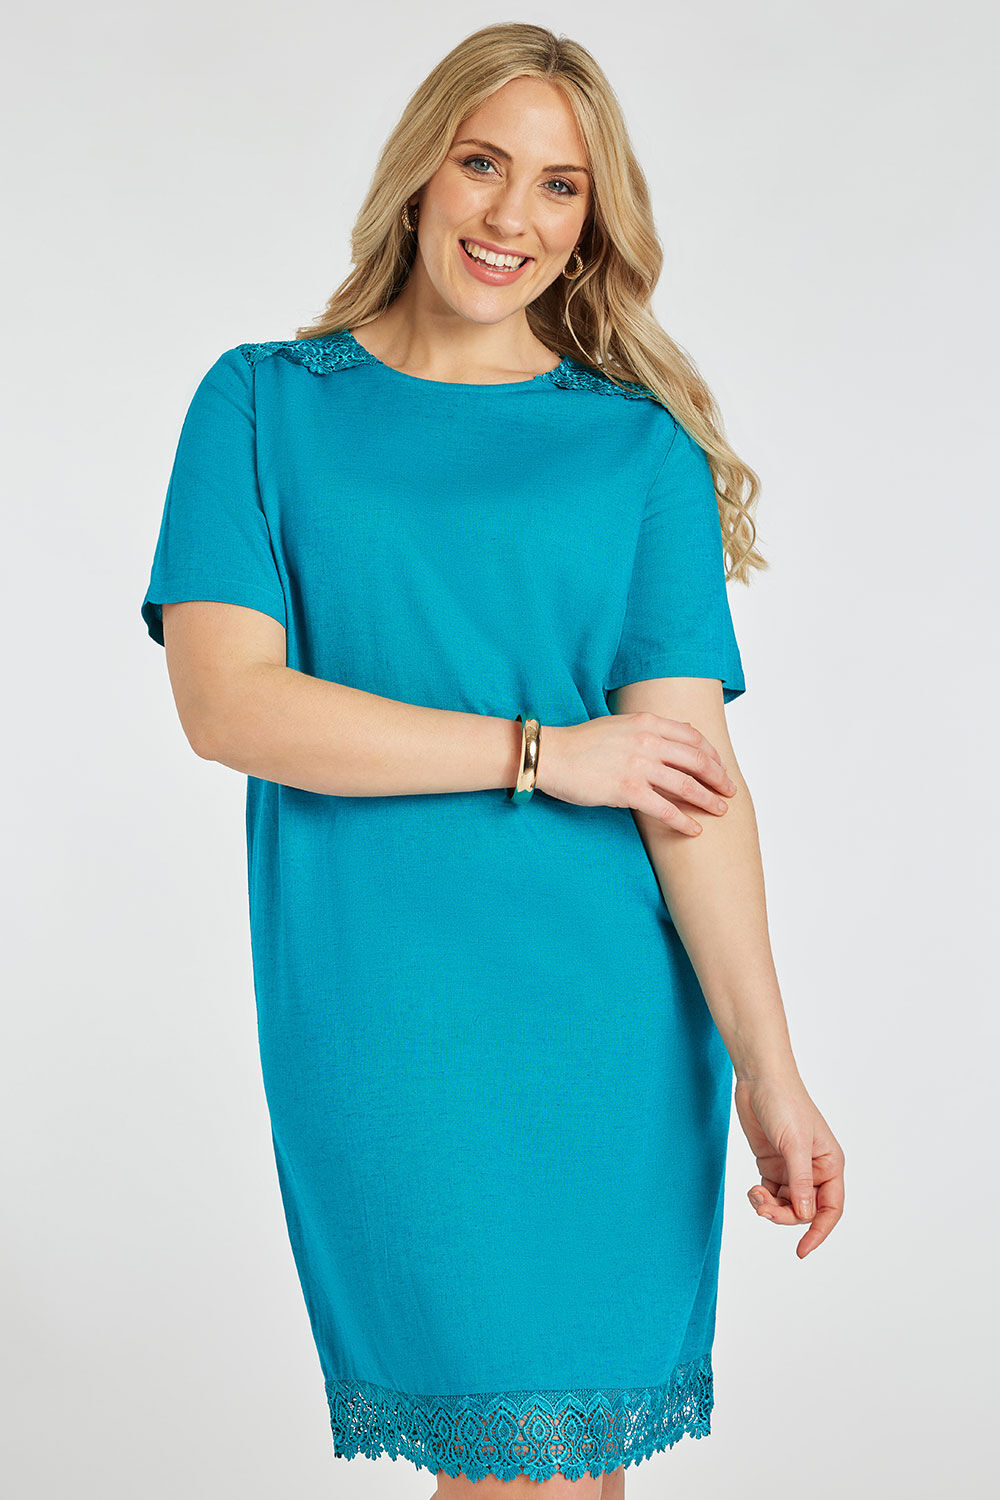 Bonmarche Turquoise Plain Linen Shift Dress With Lace Trim, Size: 10